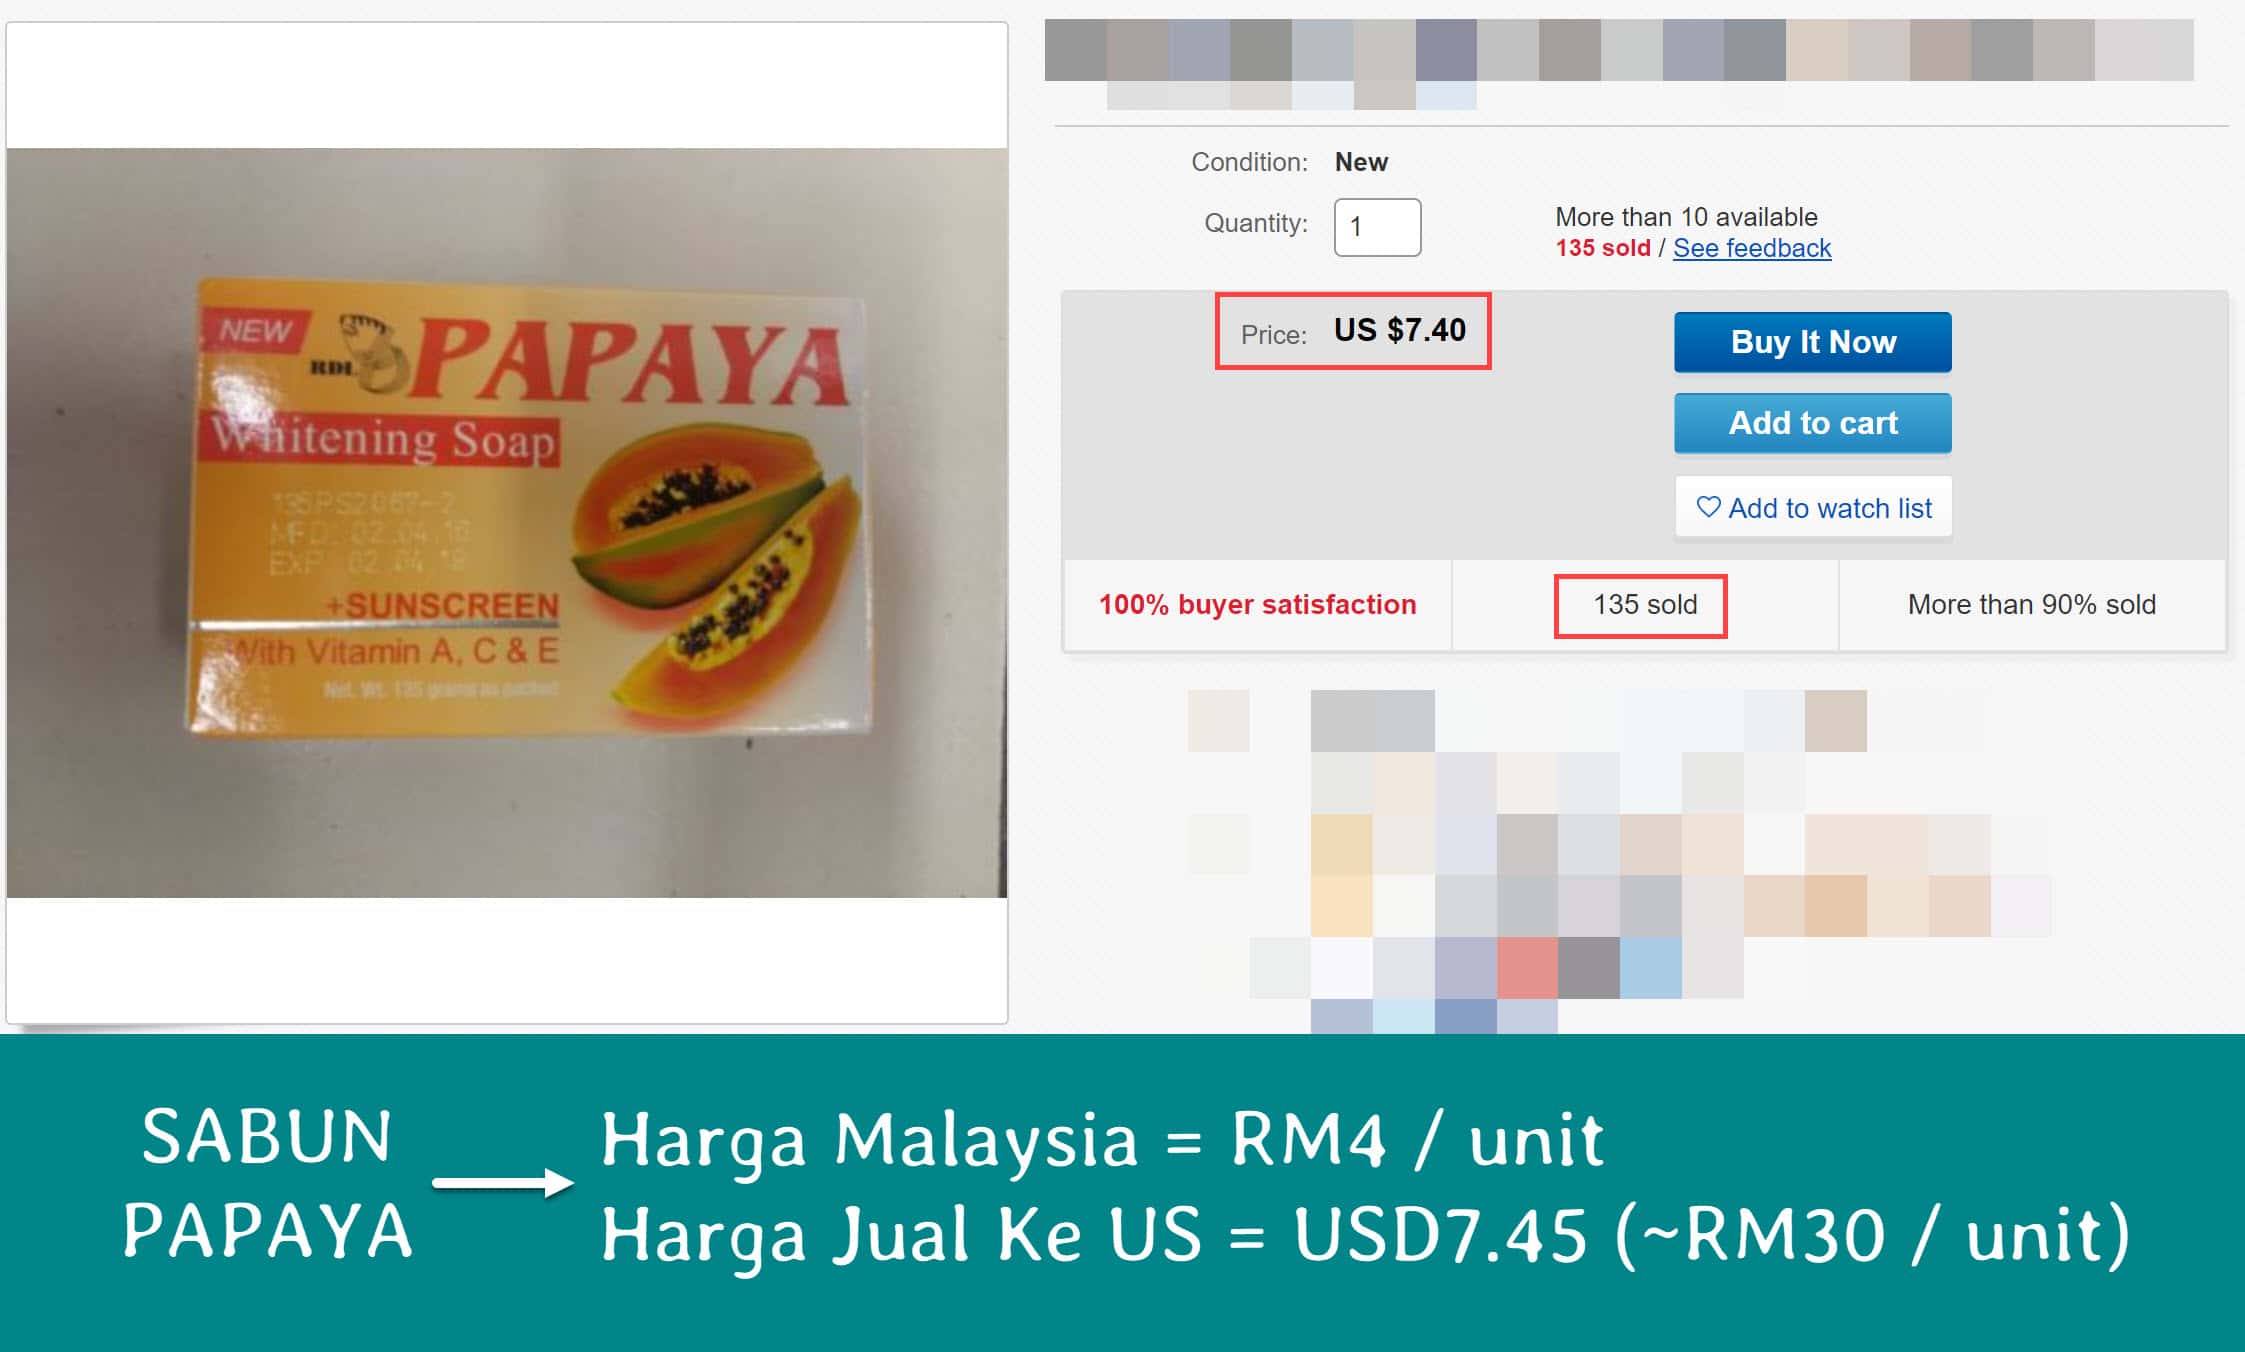 Ebay-sample-sabun-papaya-green.jpg